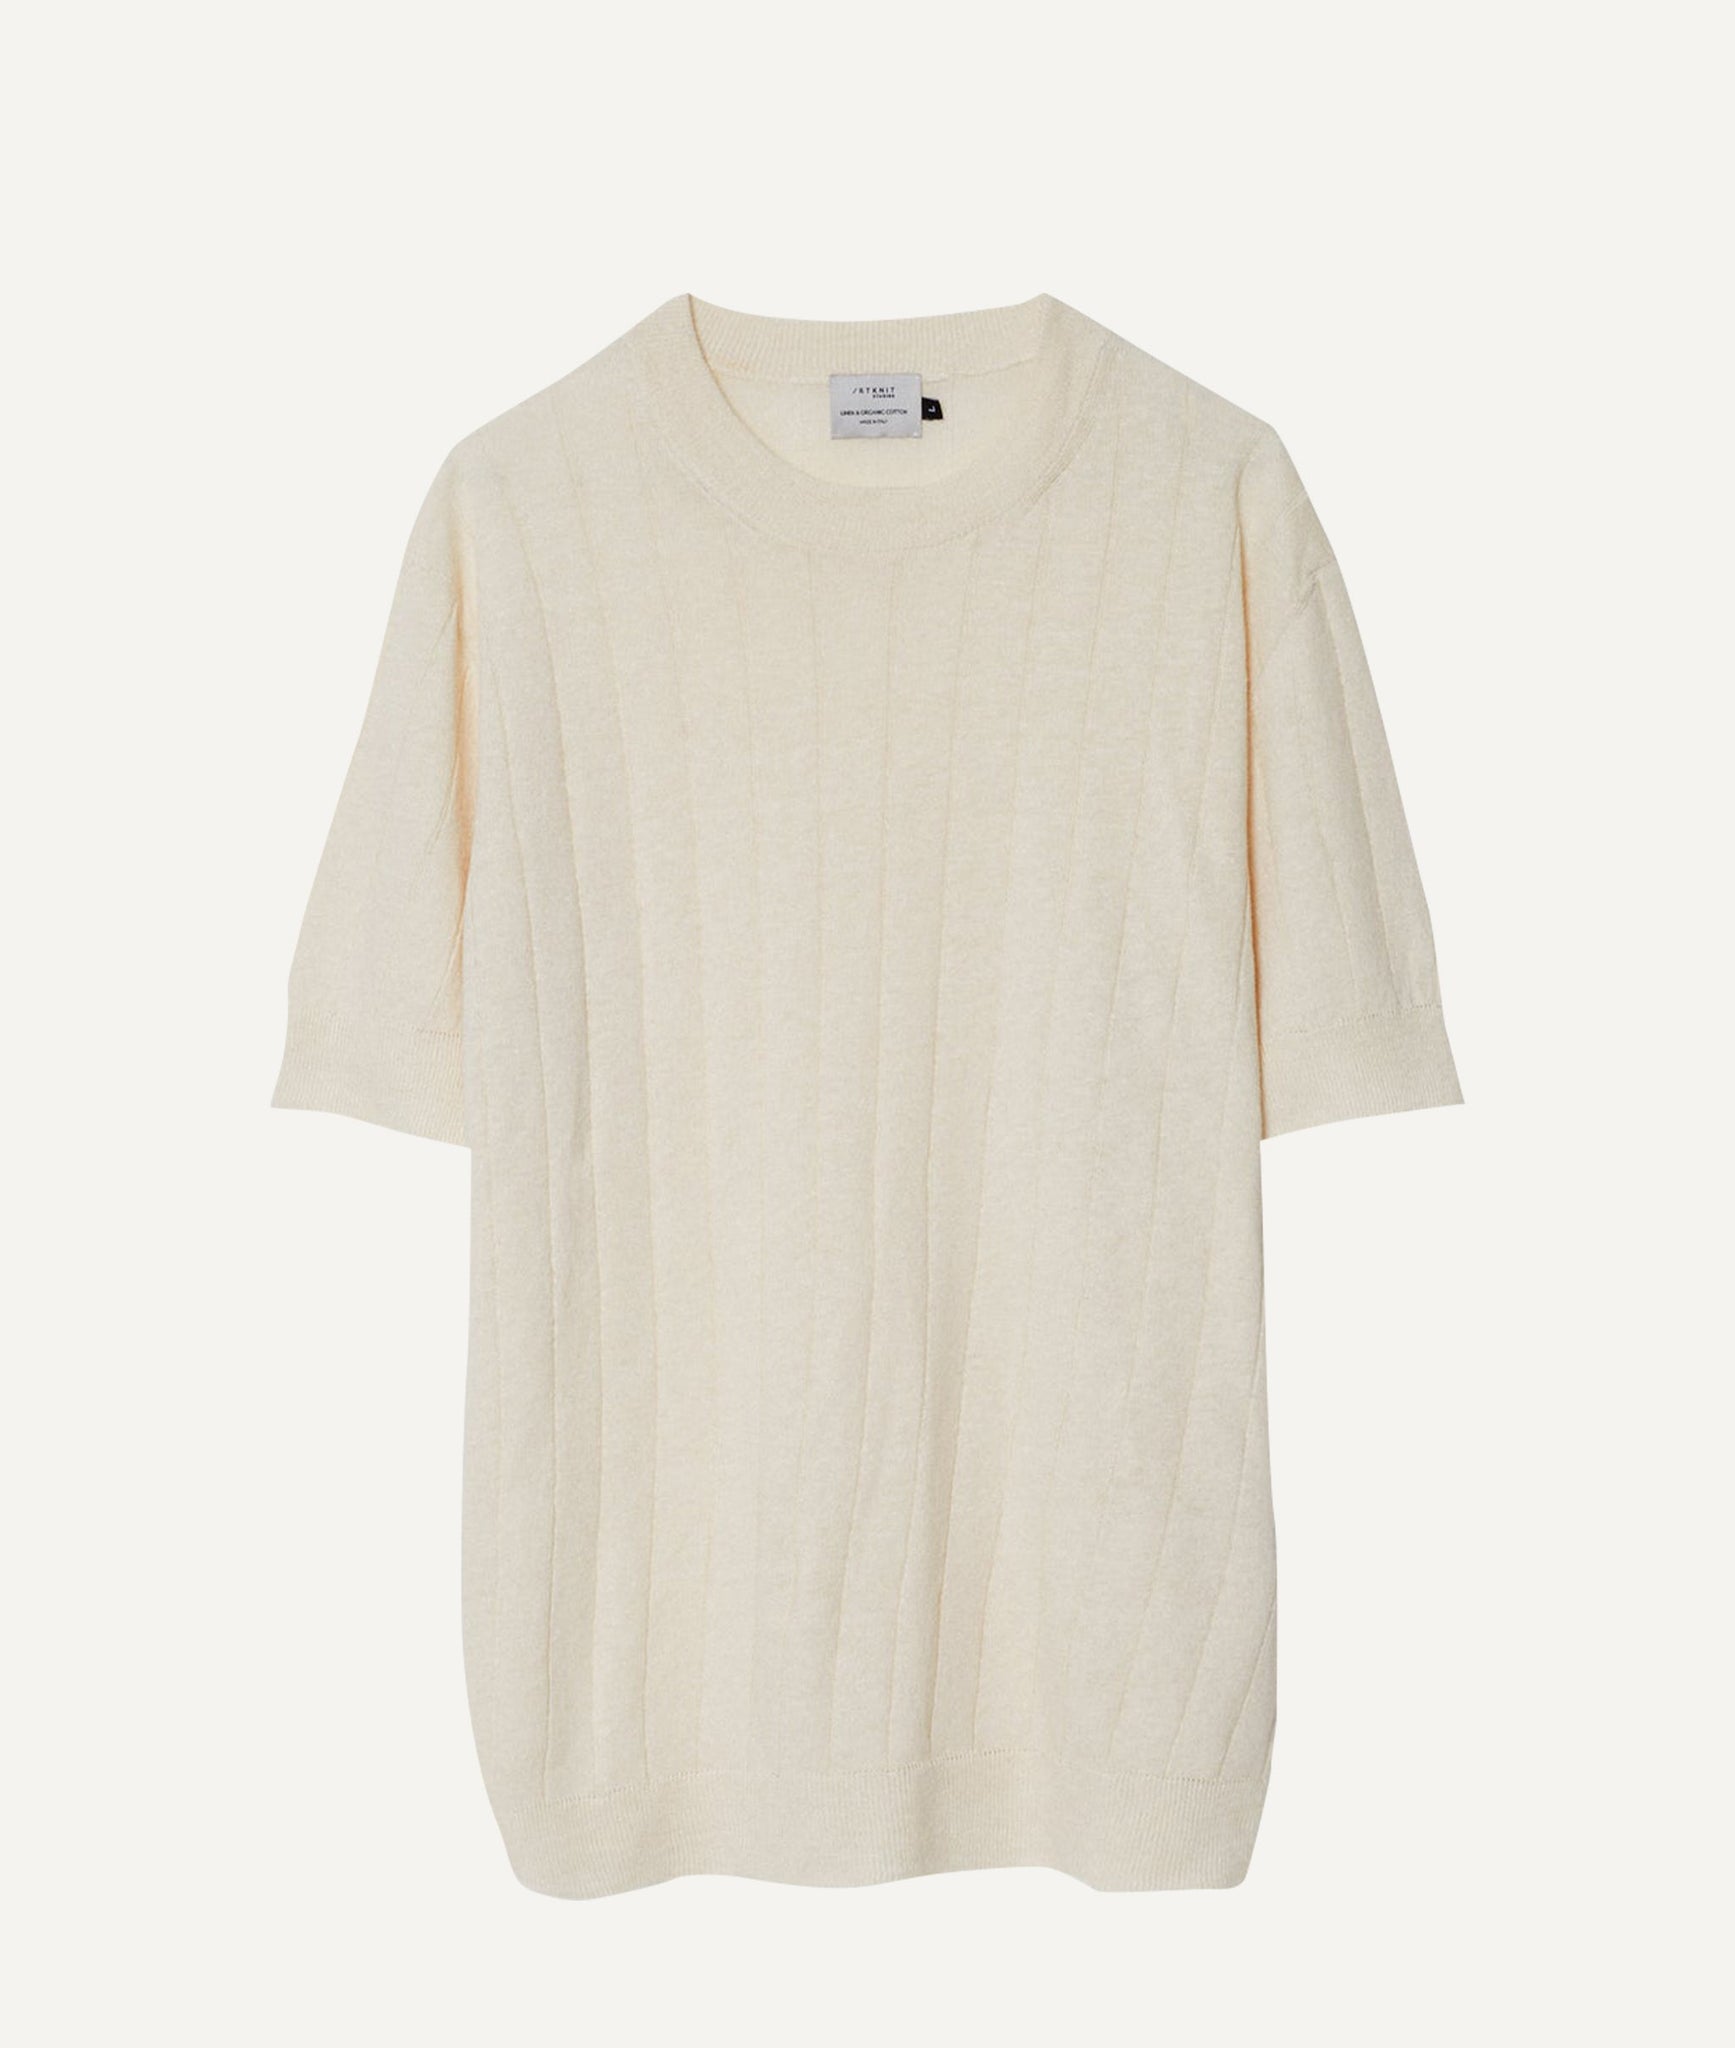 The Linen Cotton Vintage T-shirt